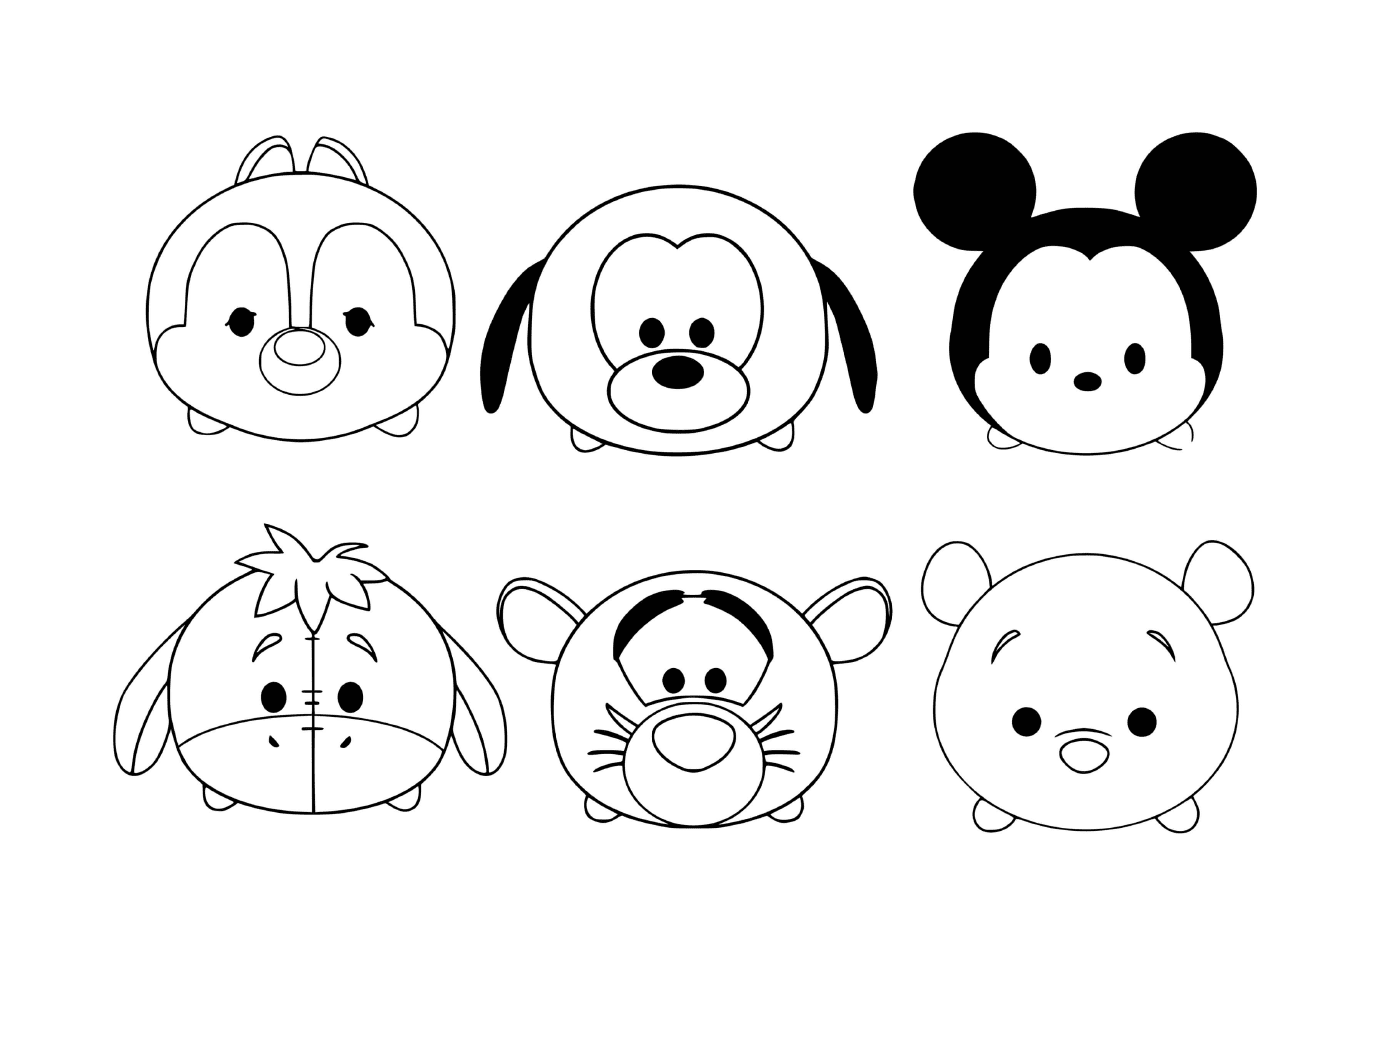  Personajes de Disney Tsum Tsum fáciles de dibujar 